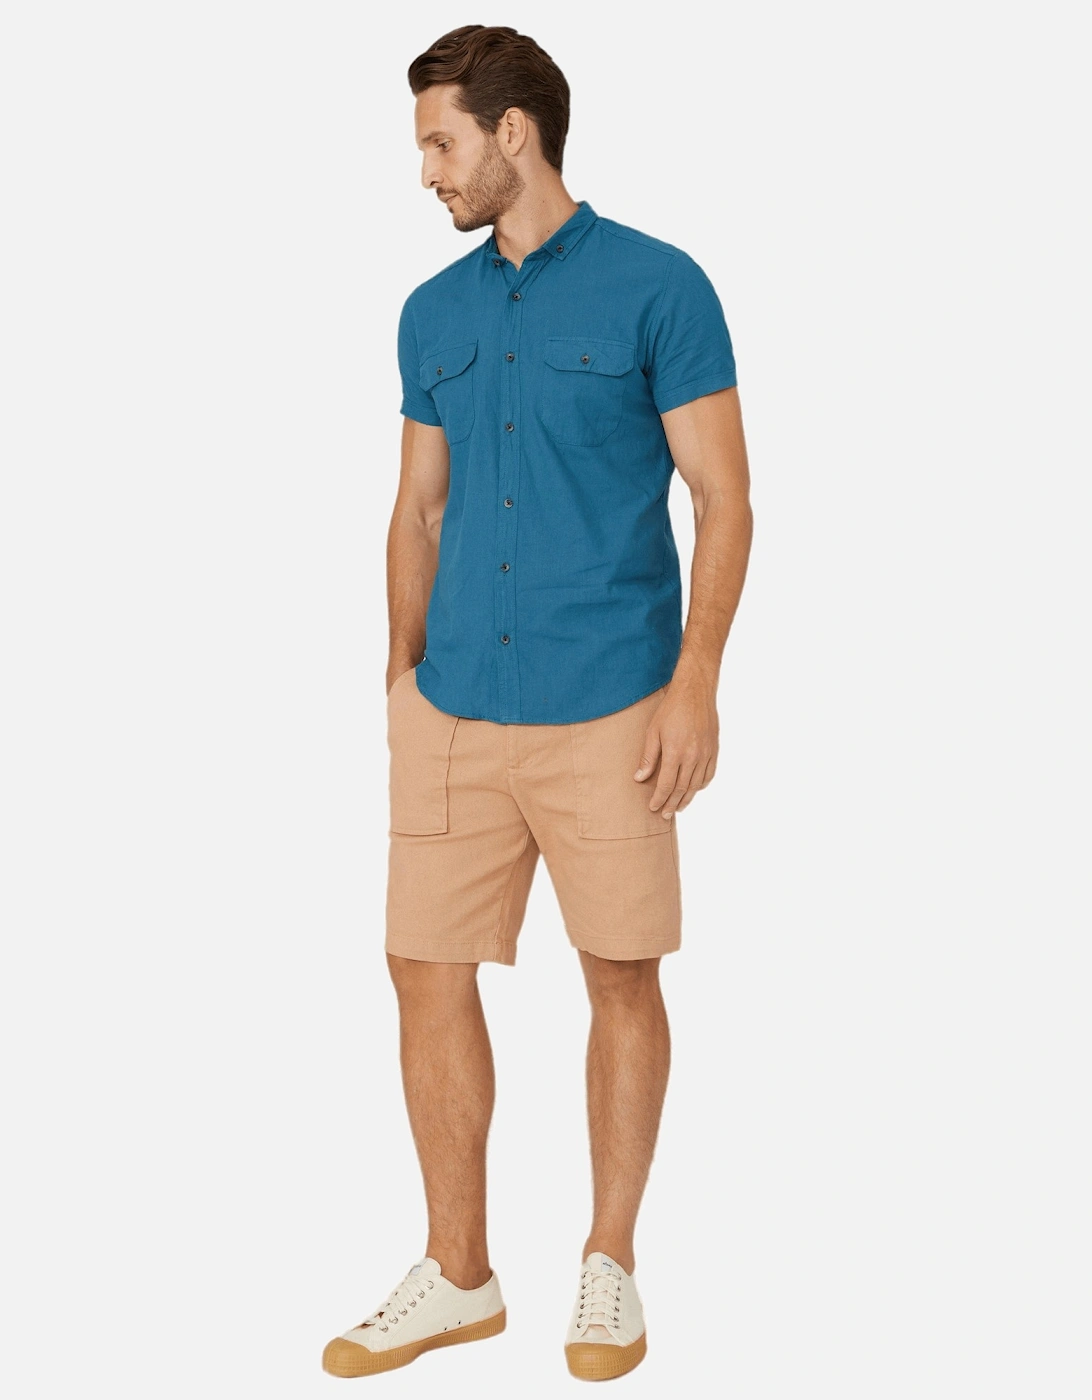 Mens Textured Slub Short-Sleeved Shirt, 6 of 5